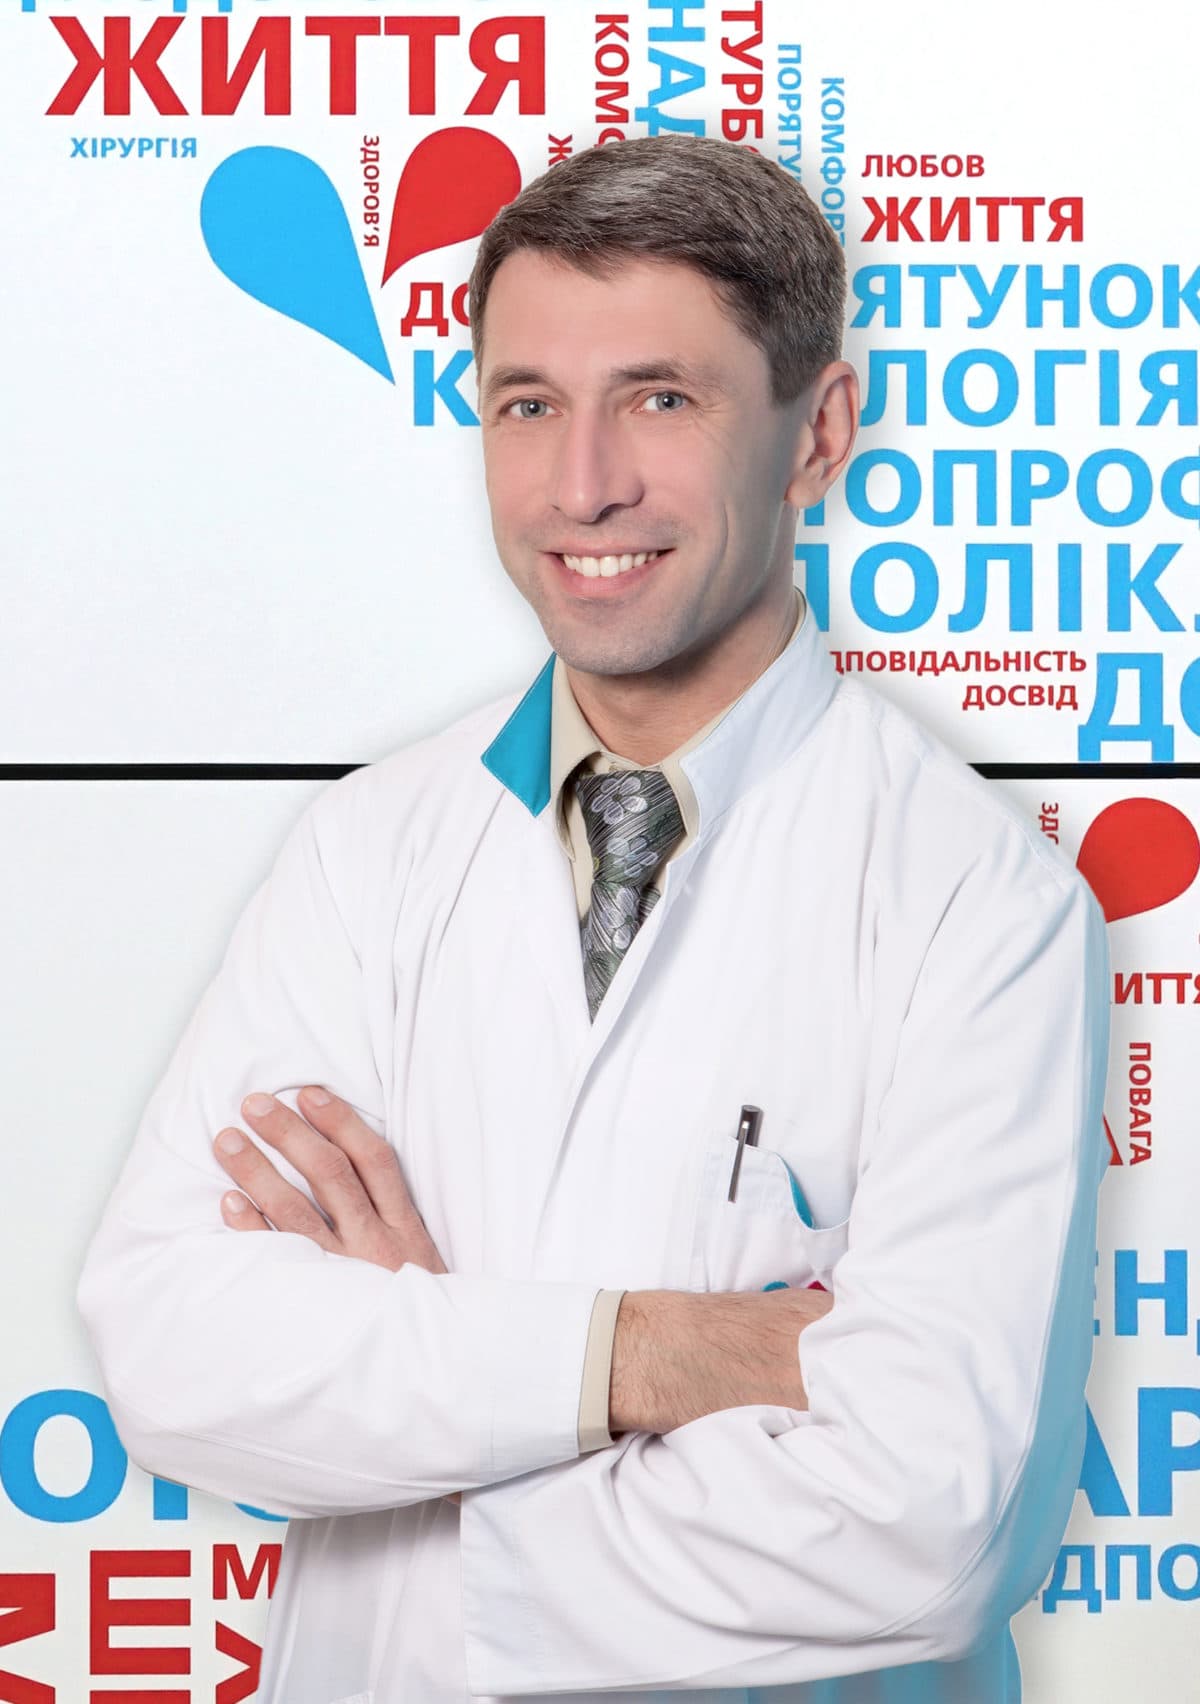 Експертна кардіологія та кардіохірургія 24/7 - 4 - svekaterina.ua